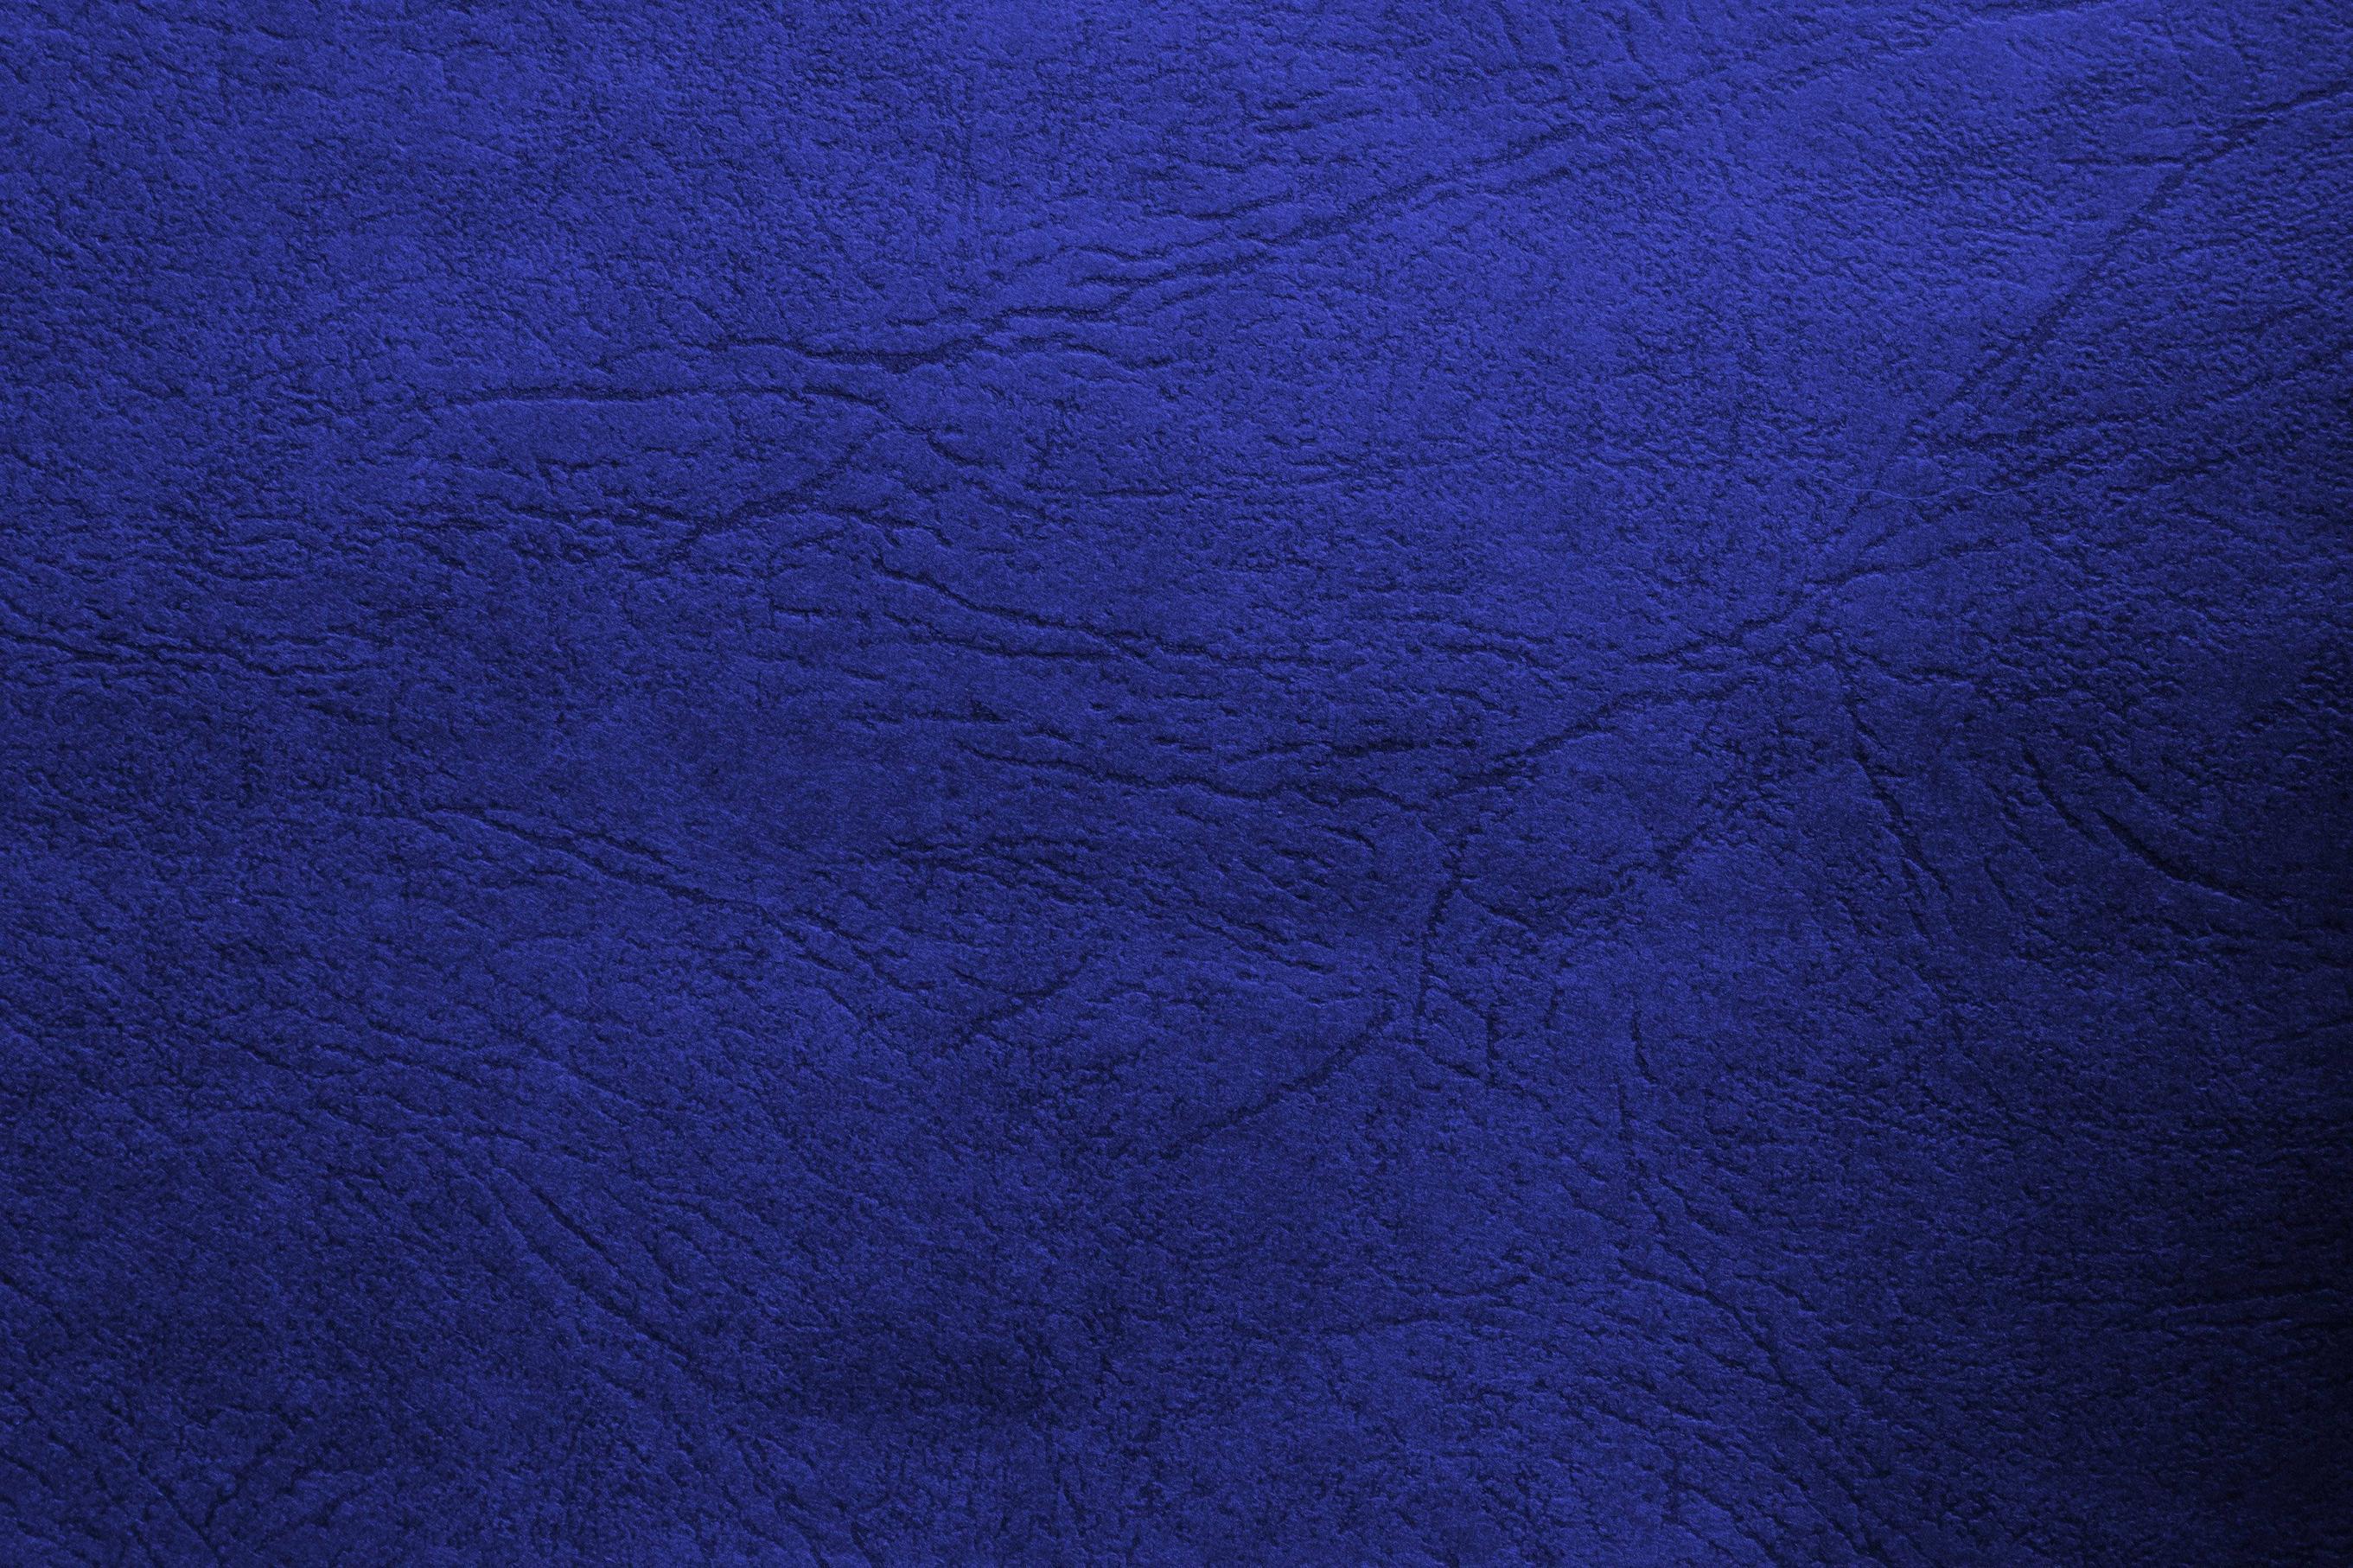 Blue Leather Texture Picture. Free Photograph. Photo Public Domain